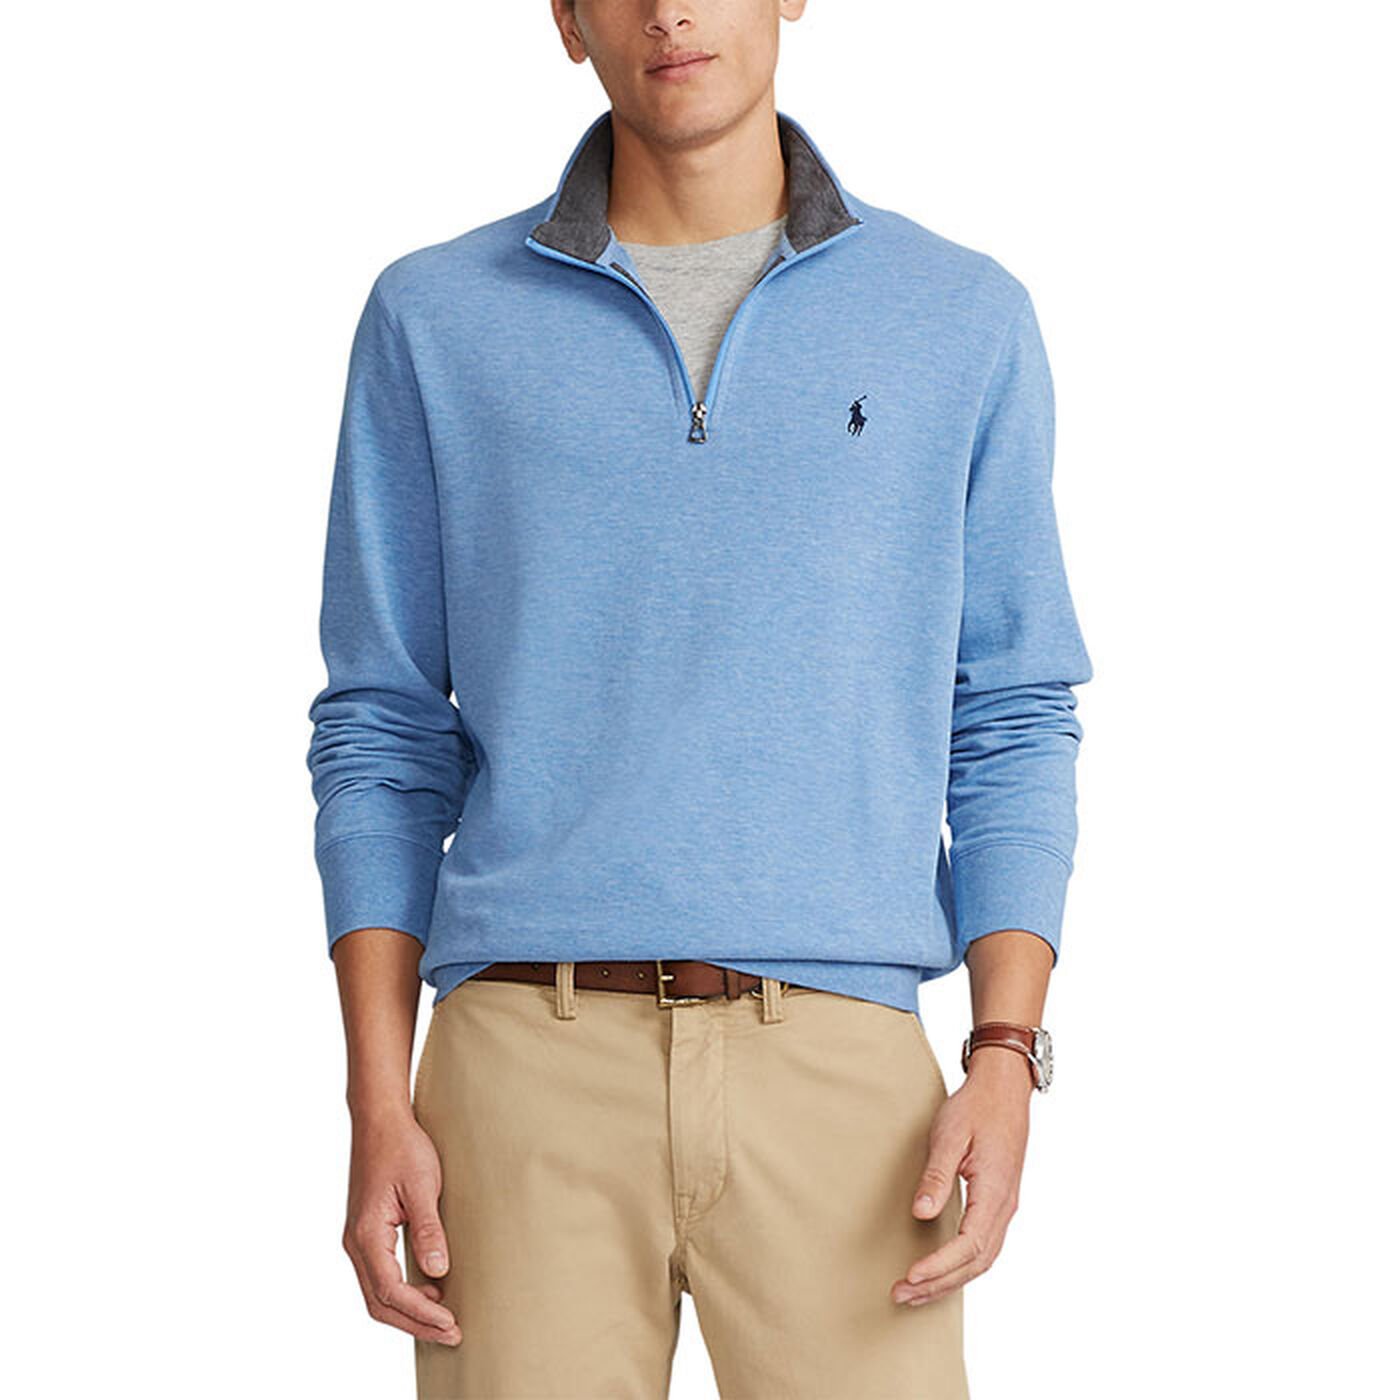 Men's Luxury Jersey Quarter-Zip Pullover Top | Sporting Life Online